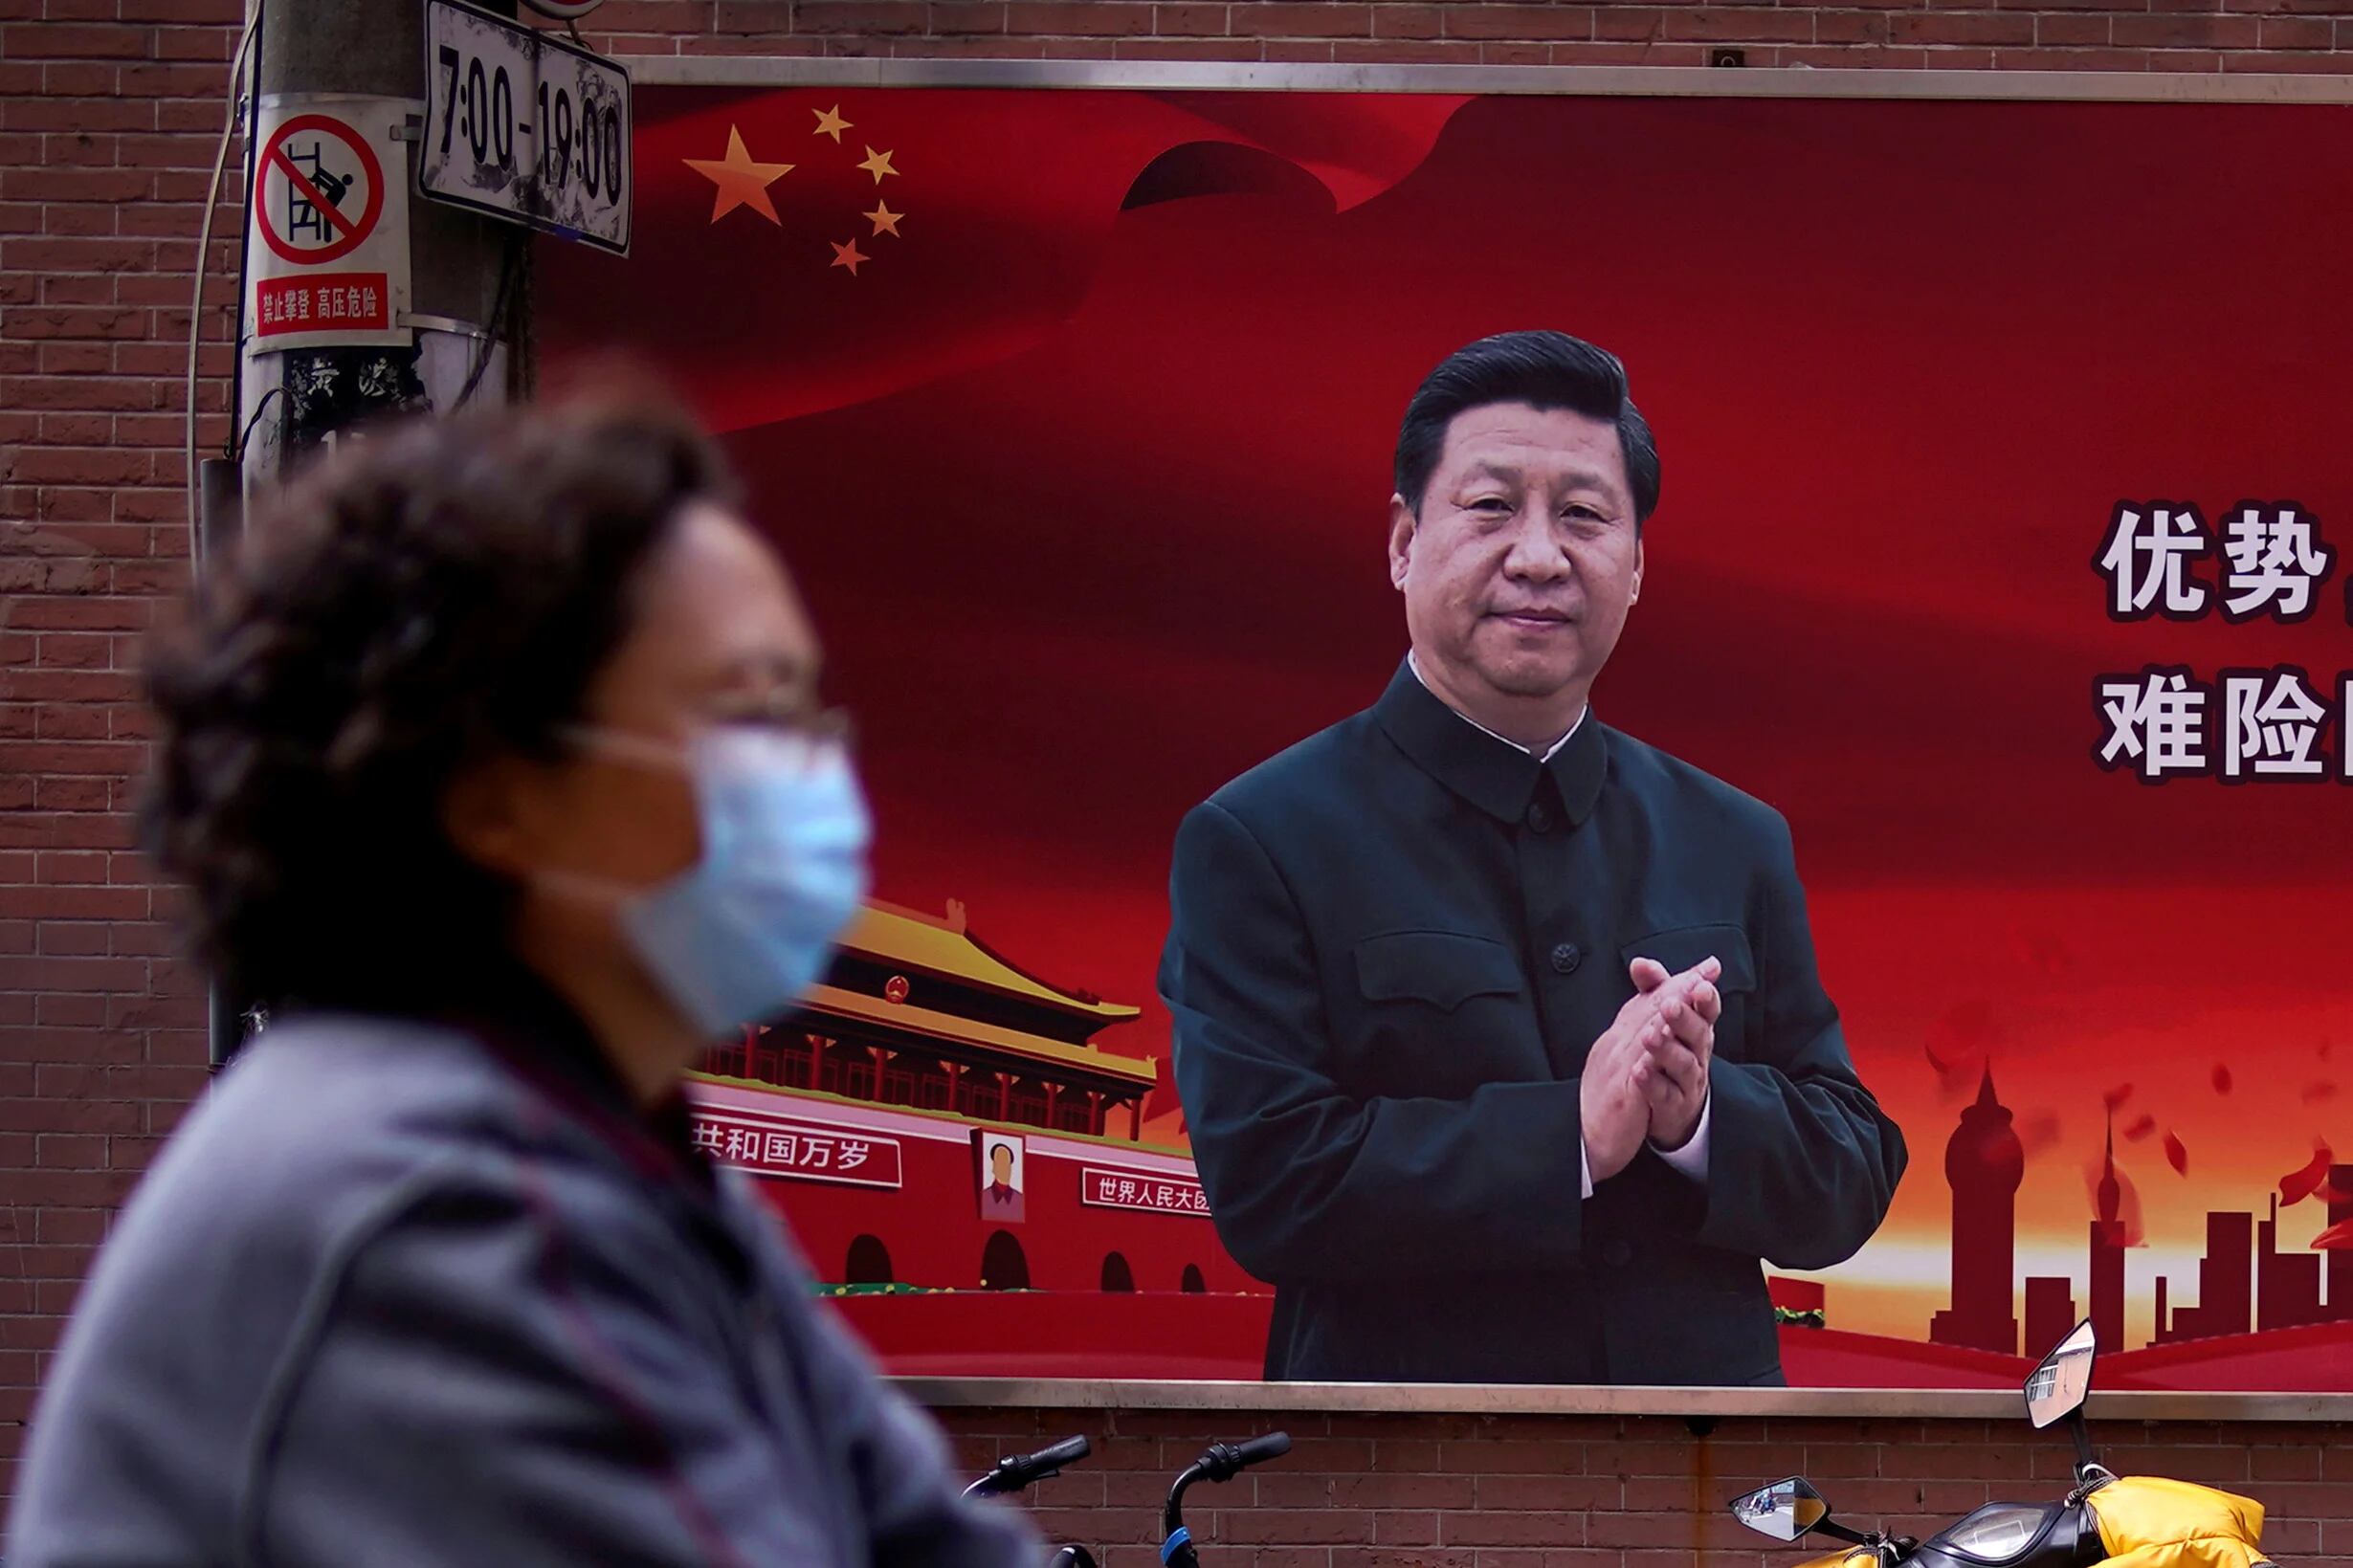 FOTO DE ARCHIVO: Una mujer con una máscara protectora se ve más allá de un retrato del presidente chino Xi Jinping en una calle en Shanghai, China (Reuters)